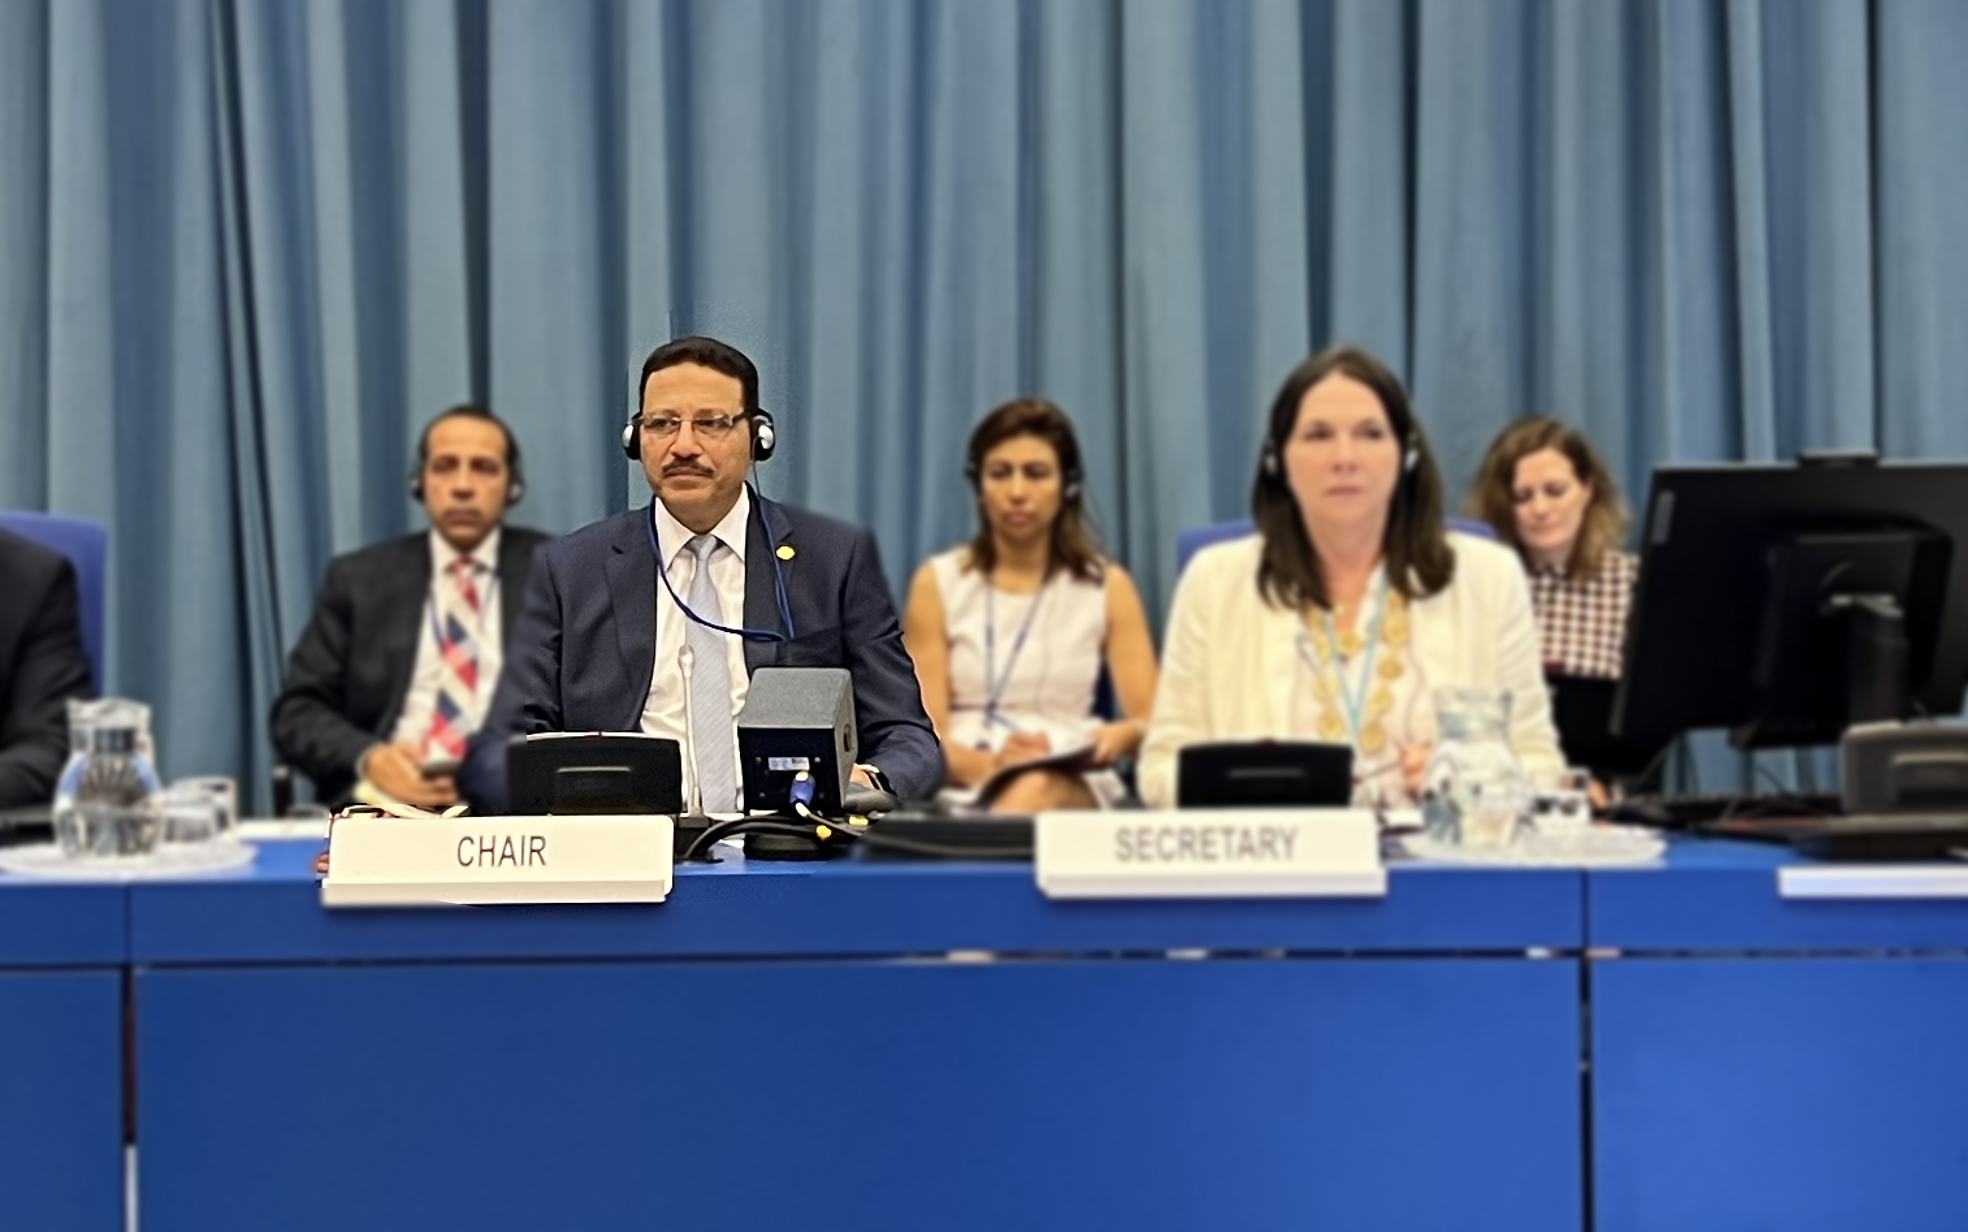 جلسات مشتركة لمجموعات عمل اتفاقية الأمم المتحدة لمكافحة الفساد المنعقدة بفيينا برئاسة السيد الوزير حسن عبد الشافى أحمد